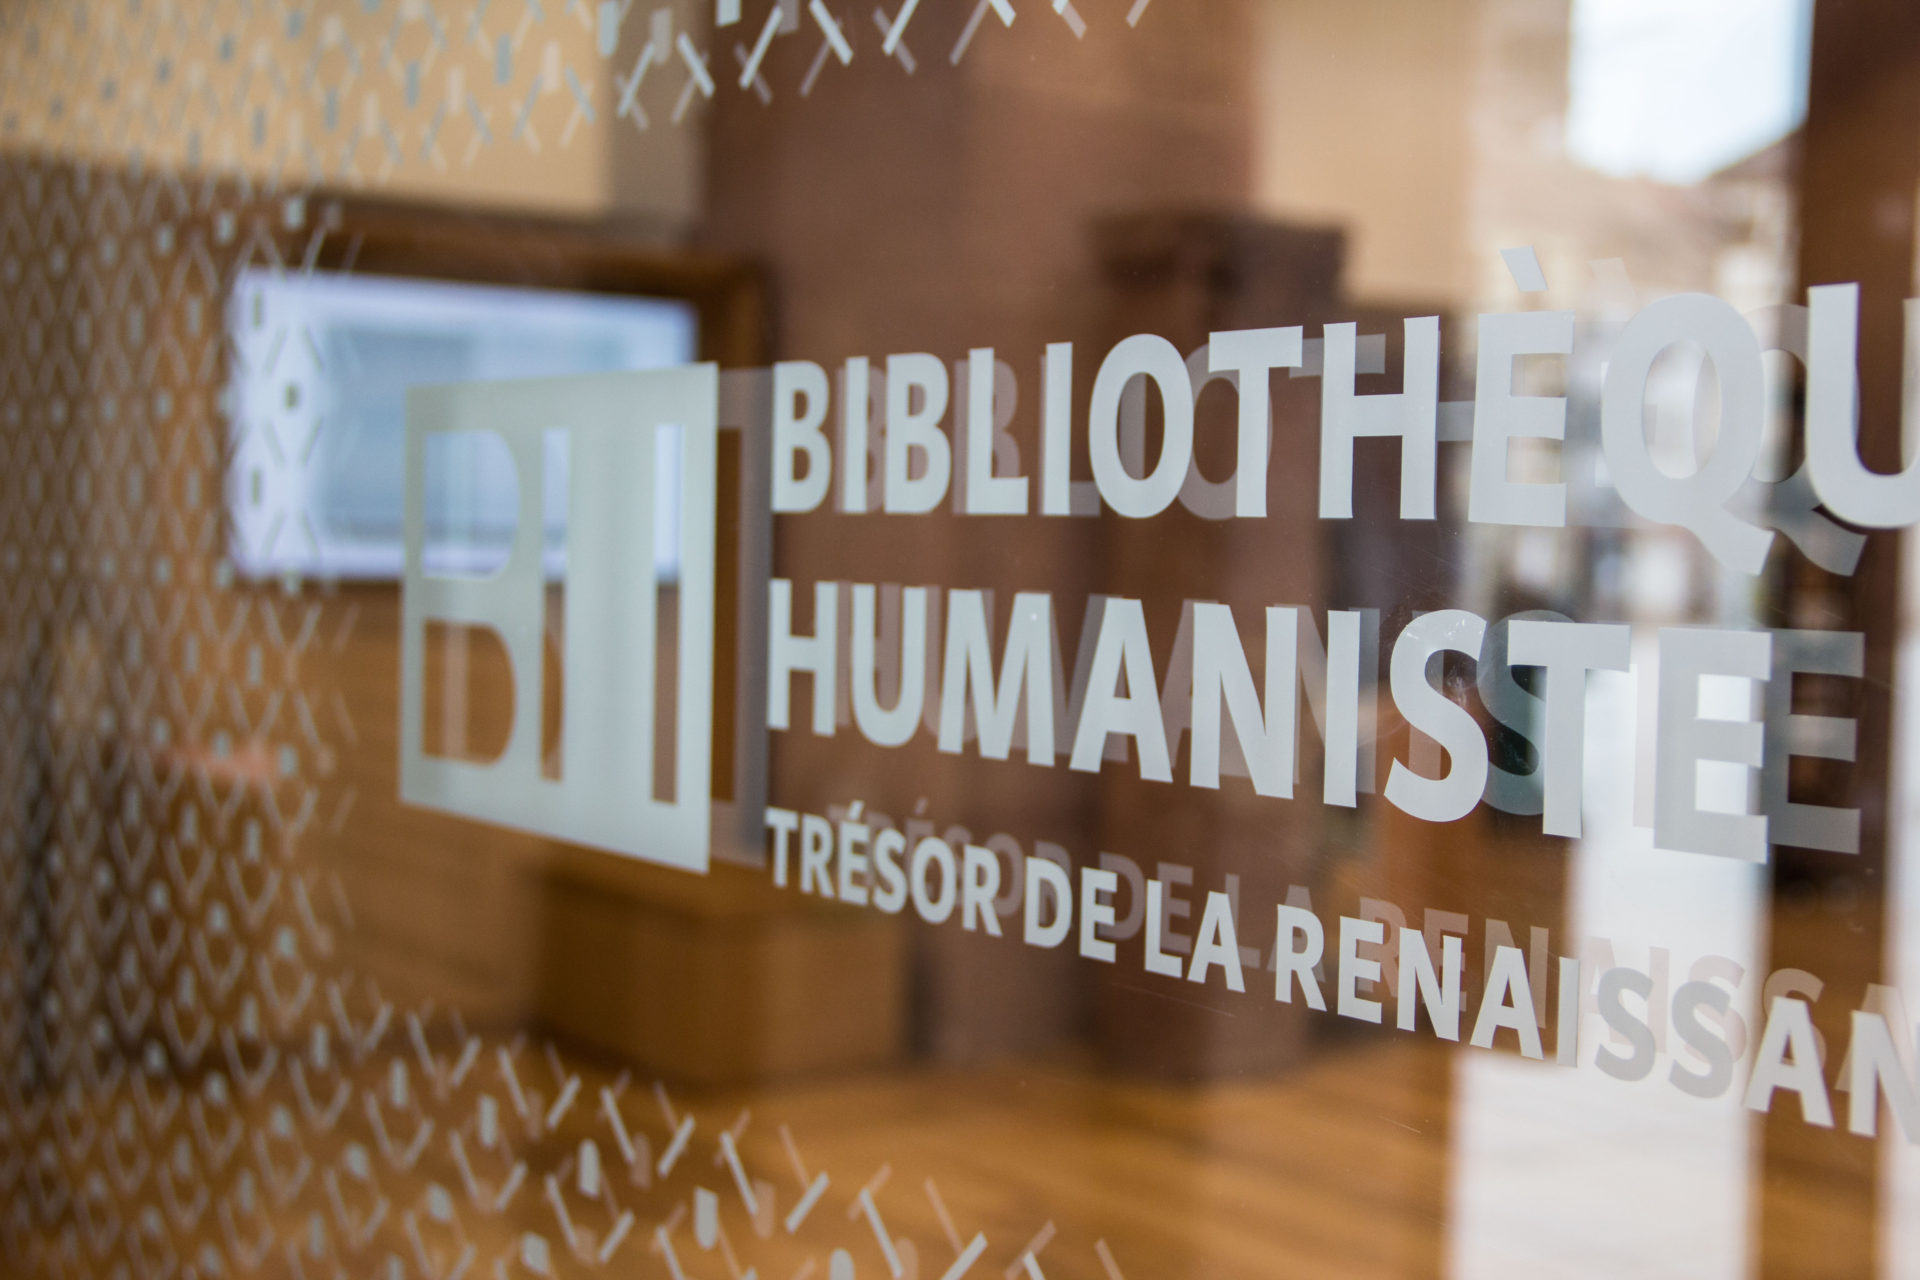 Bibliothèque humaniste  Atelier calligraphie. Un atelier pour